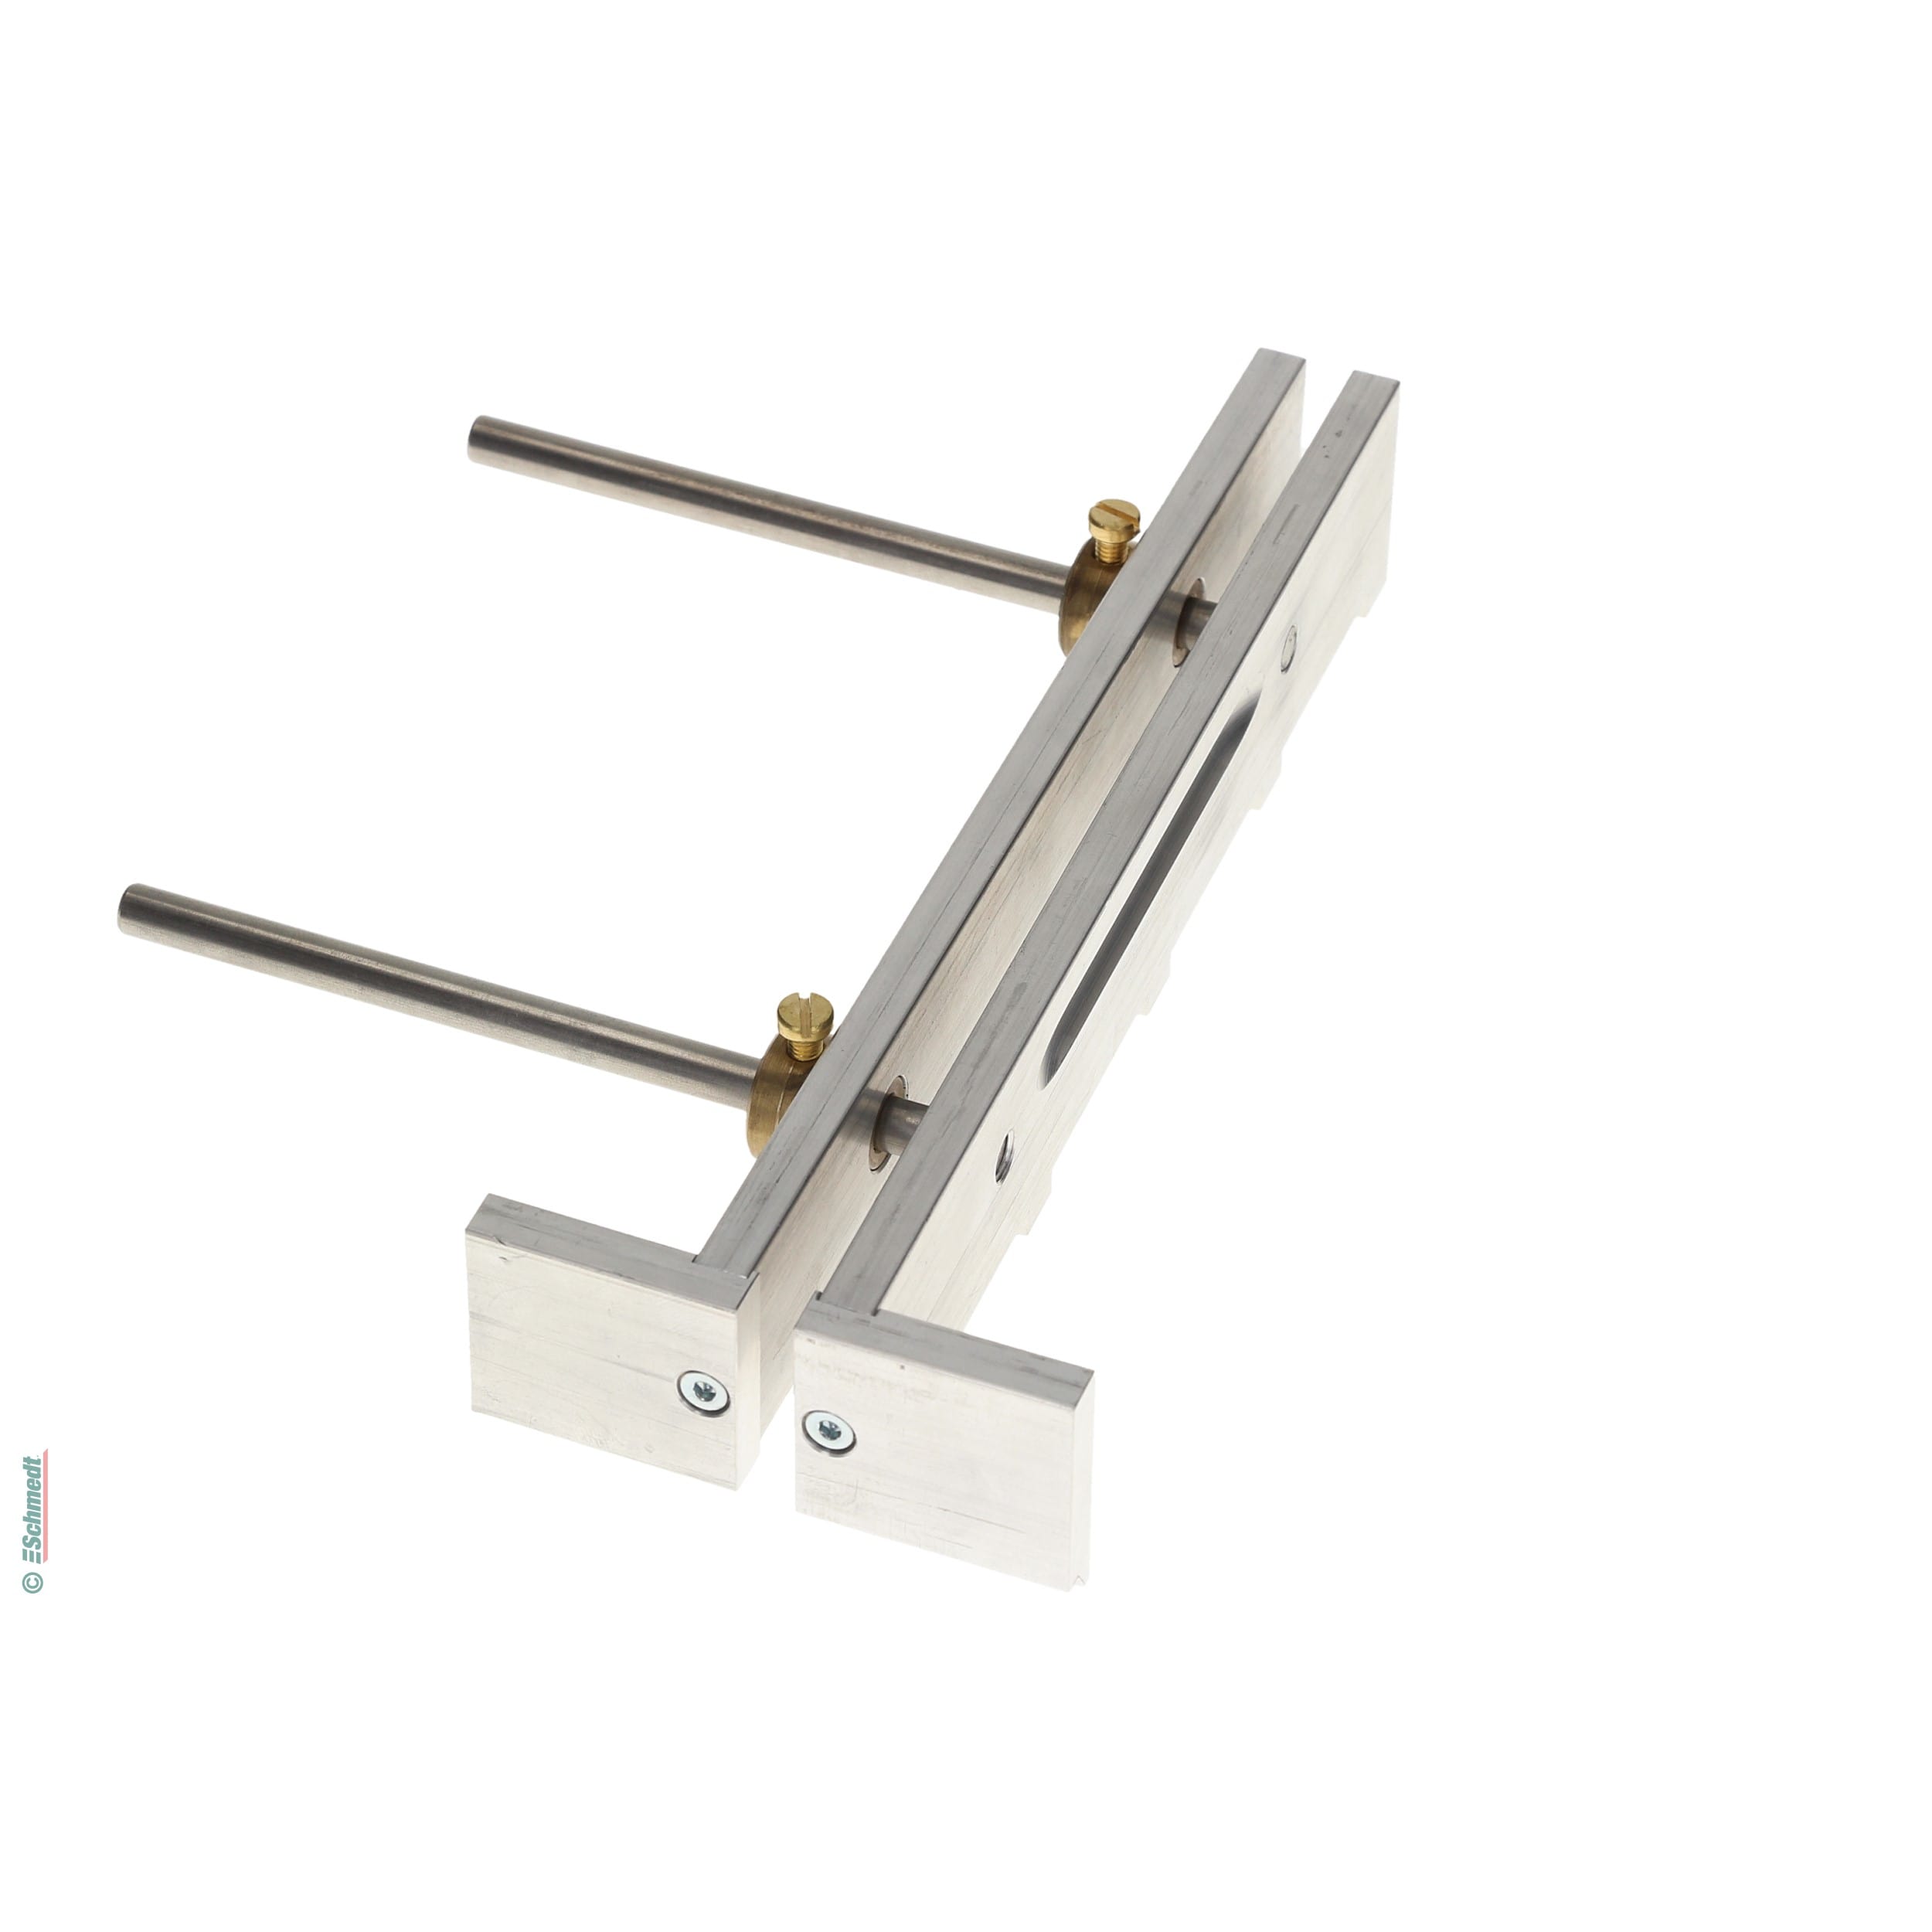 Separador para franquicias - con ancho ajustable, de aluminio - Aplicación: para la alineación/posicionamiento exacto de los tableros de cub...